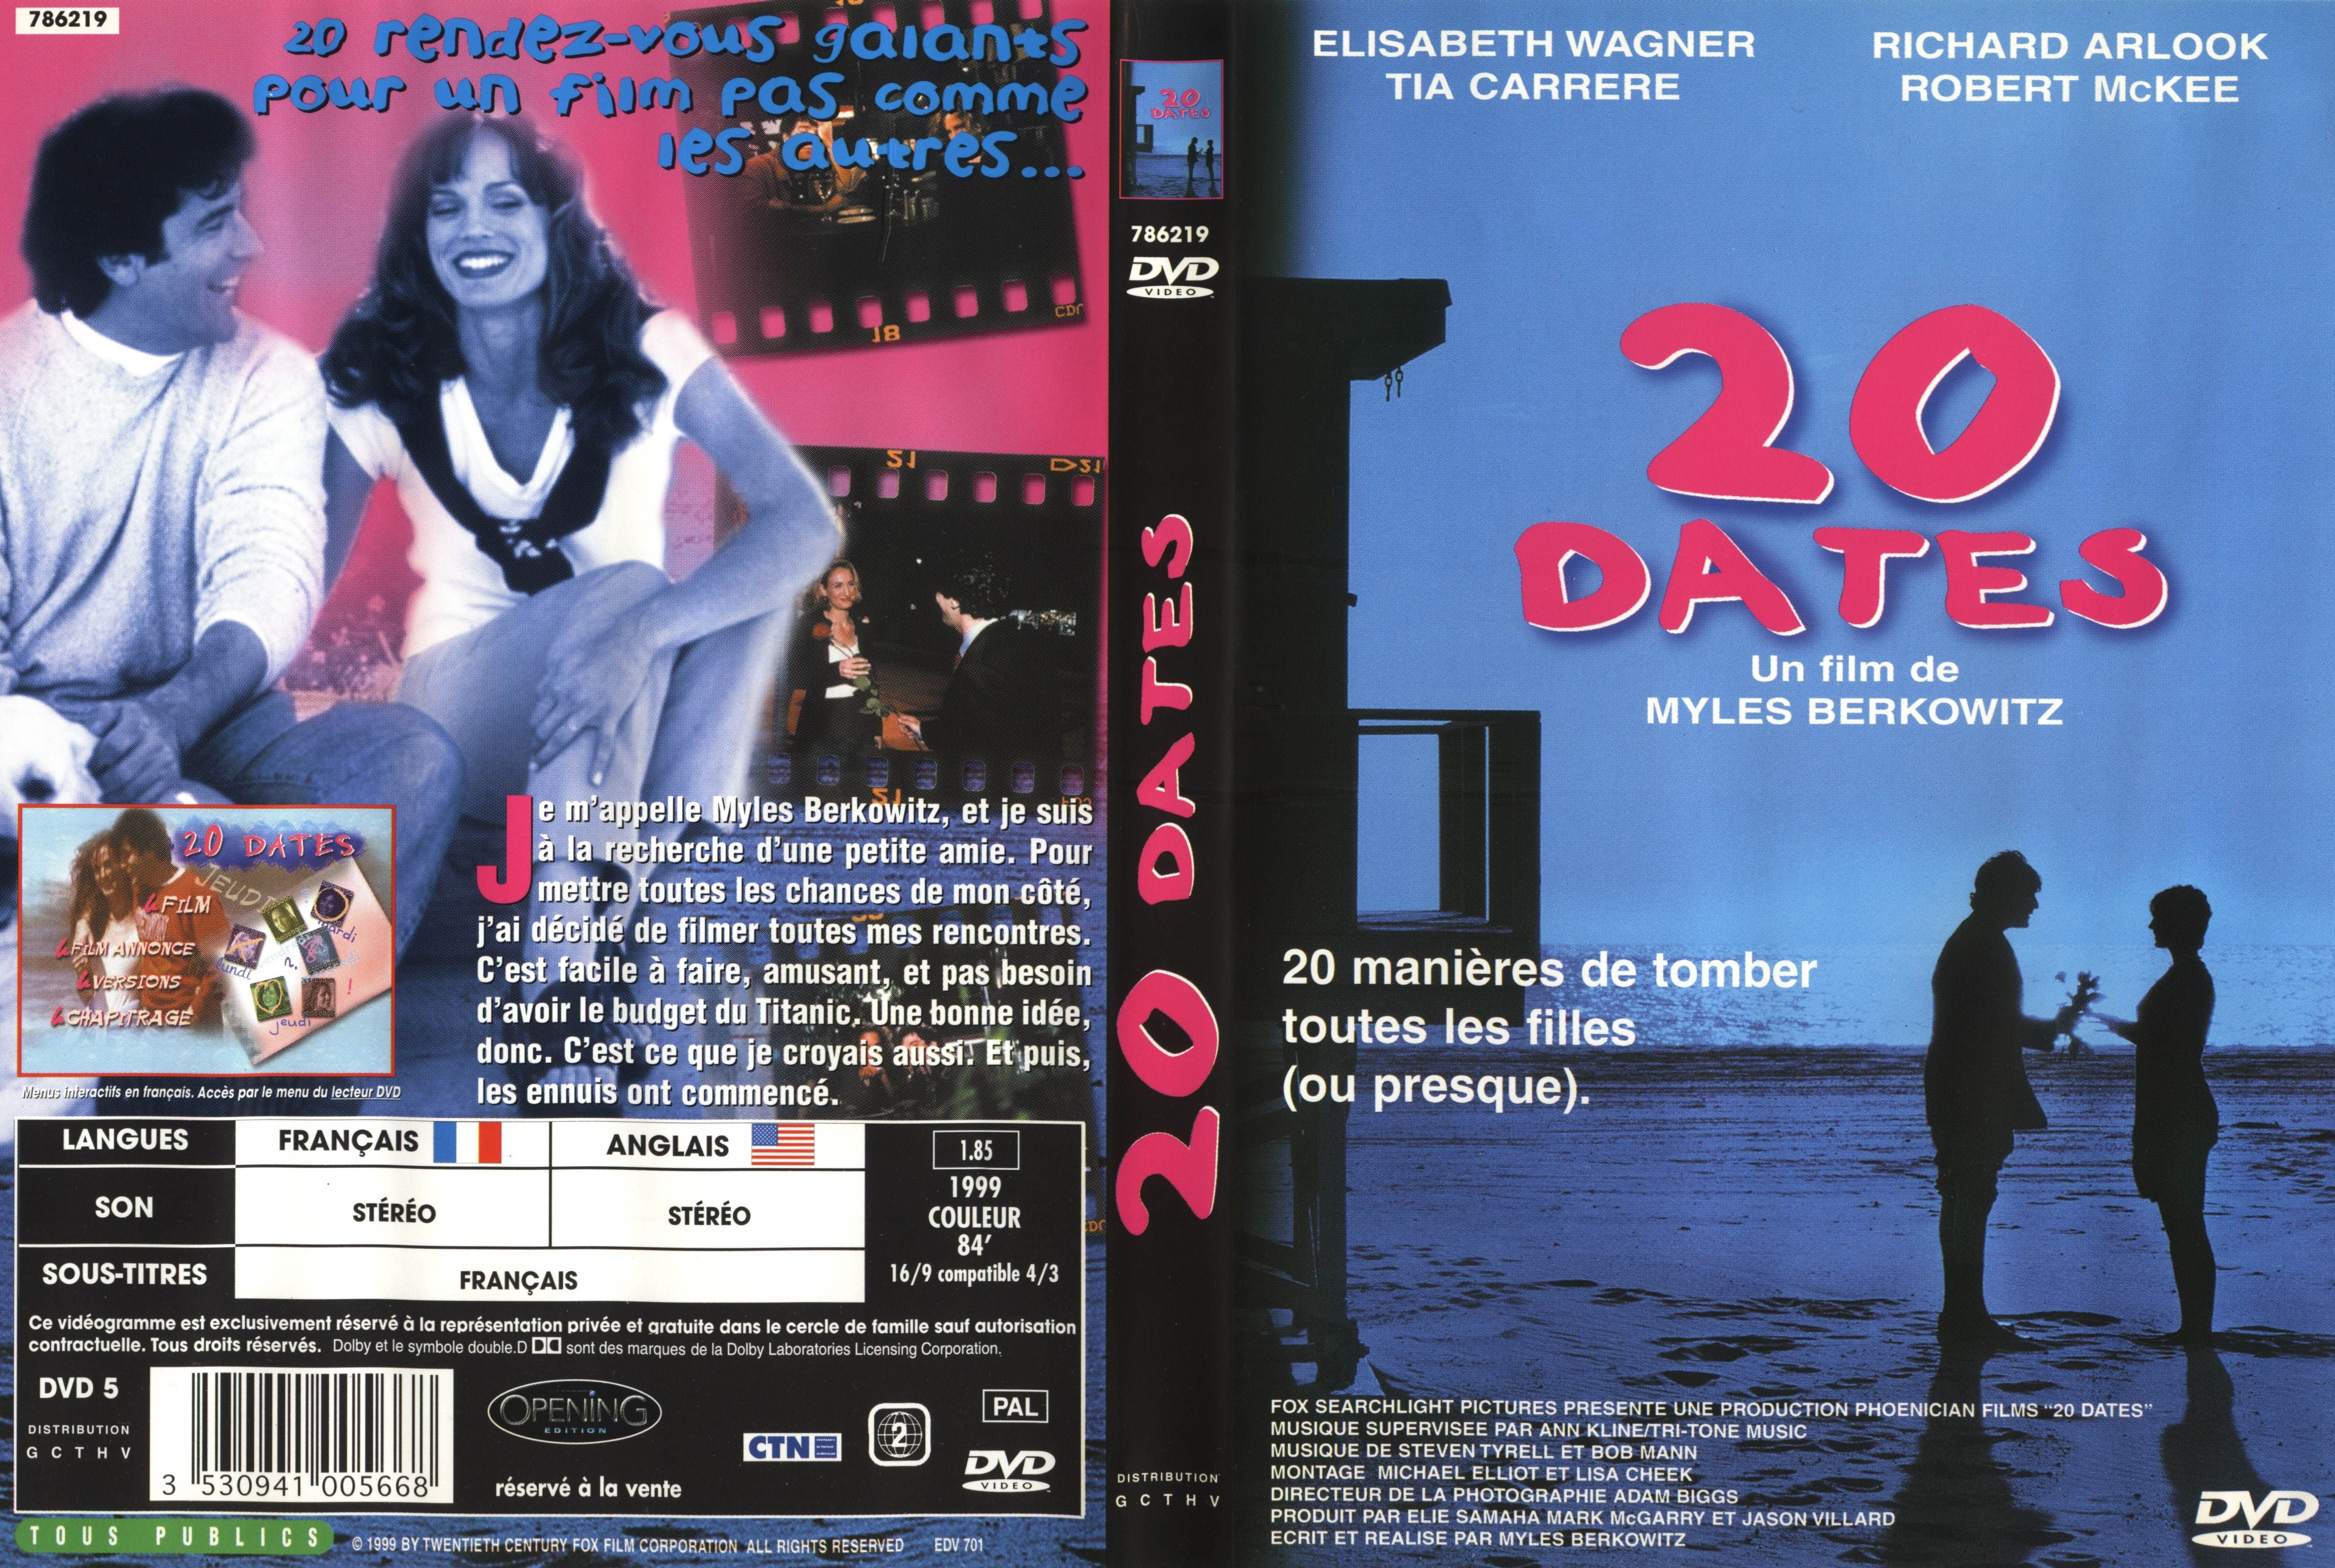 Jaquette DVD 20 dates v2